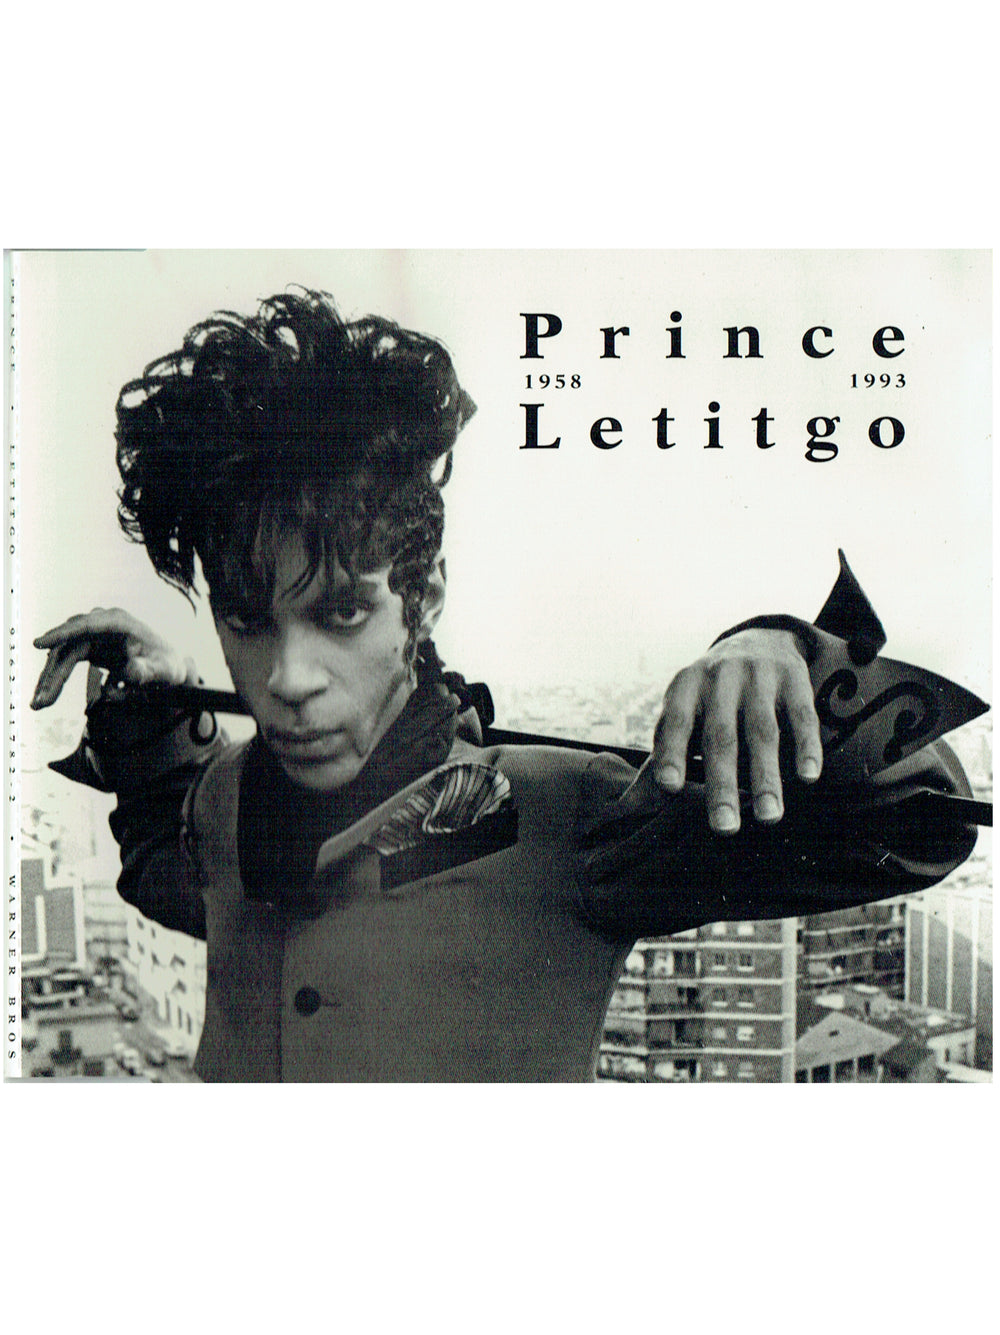 Prince Letitgo Maxi CD Single 1994 Original EU Release 6 Tracks